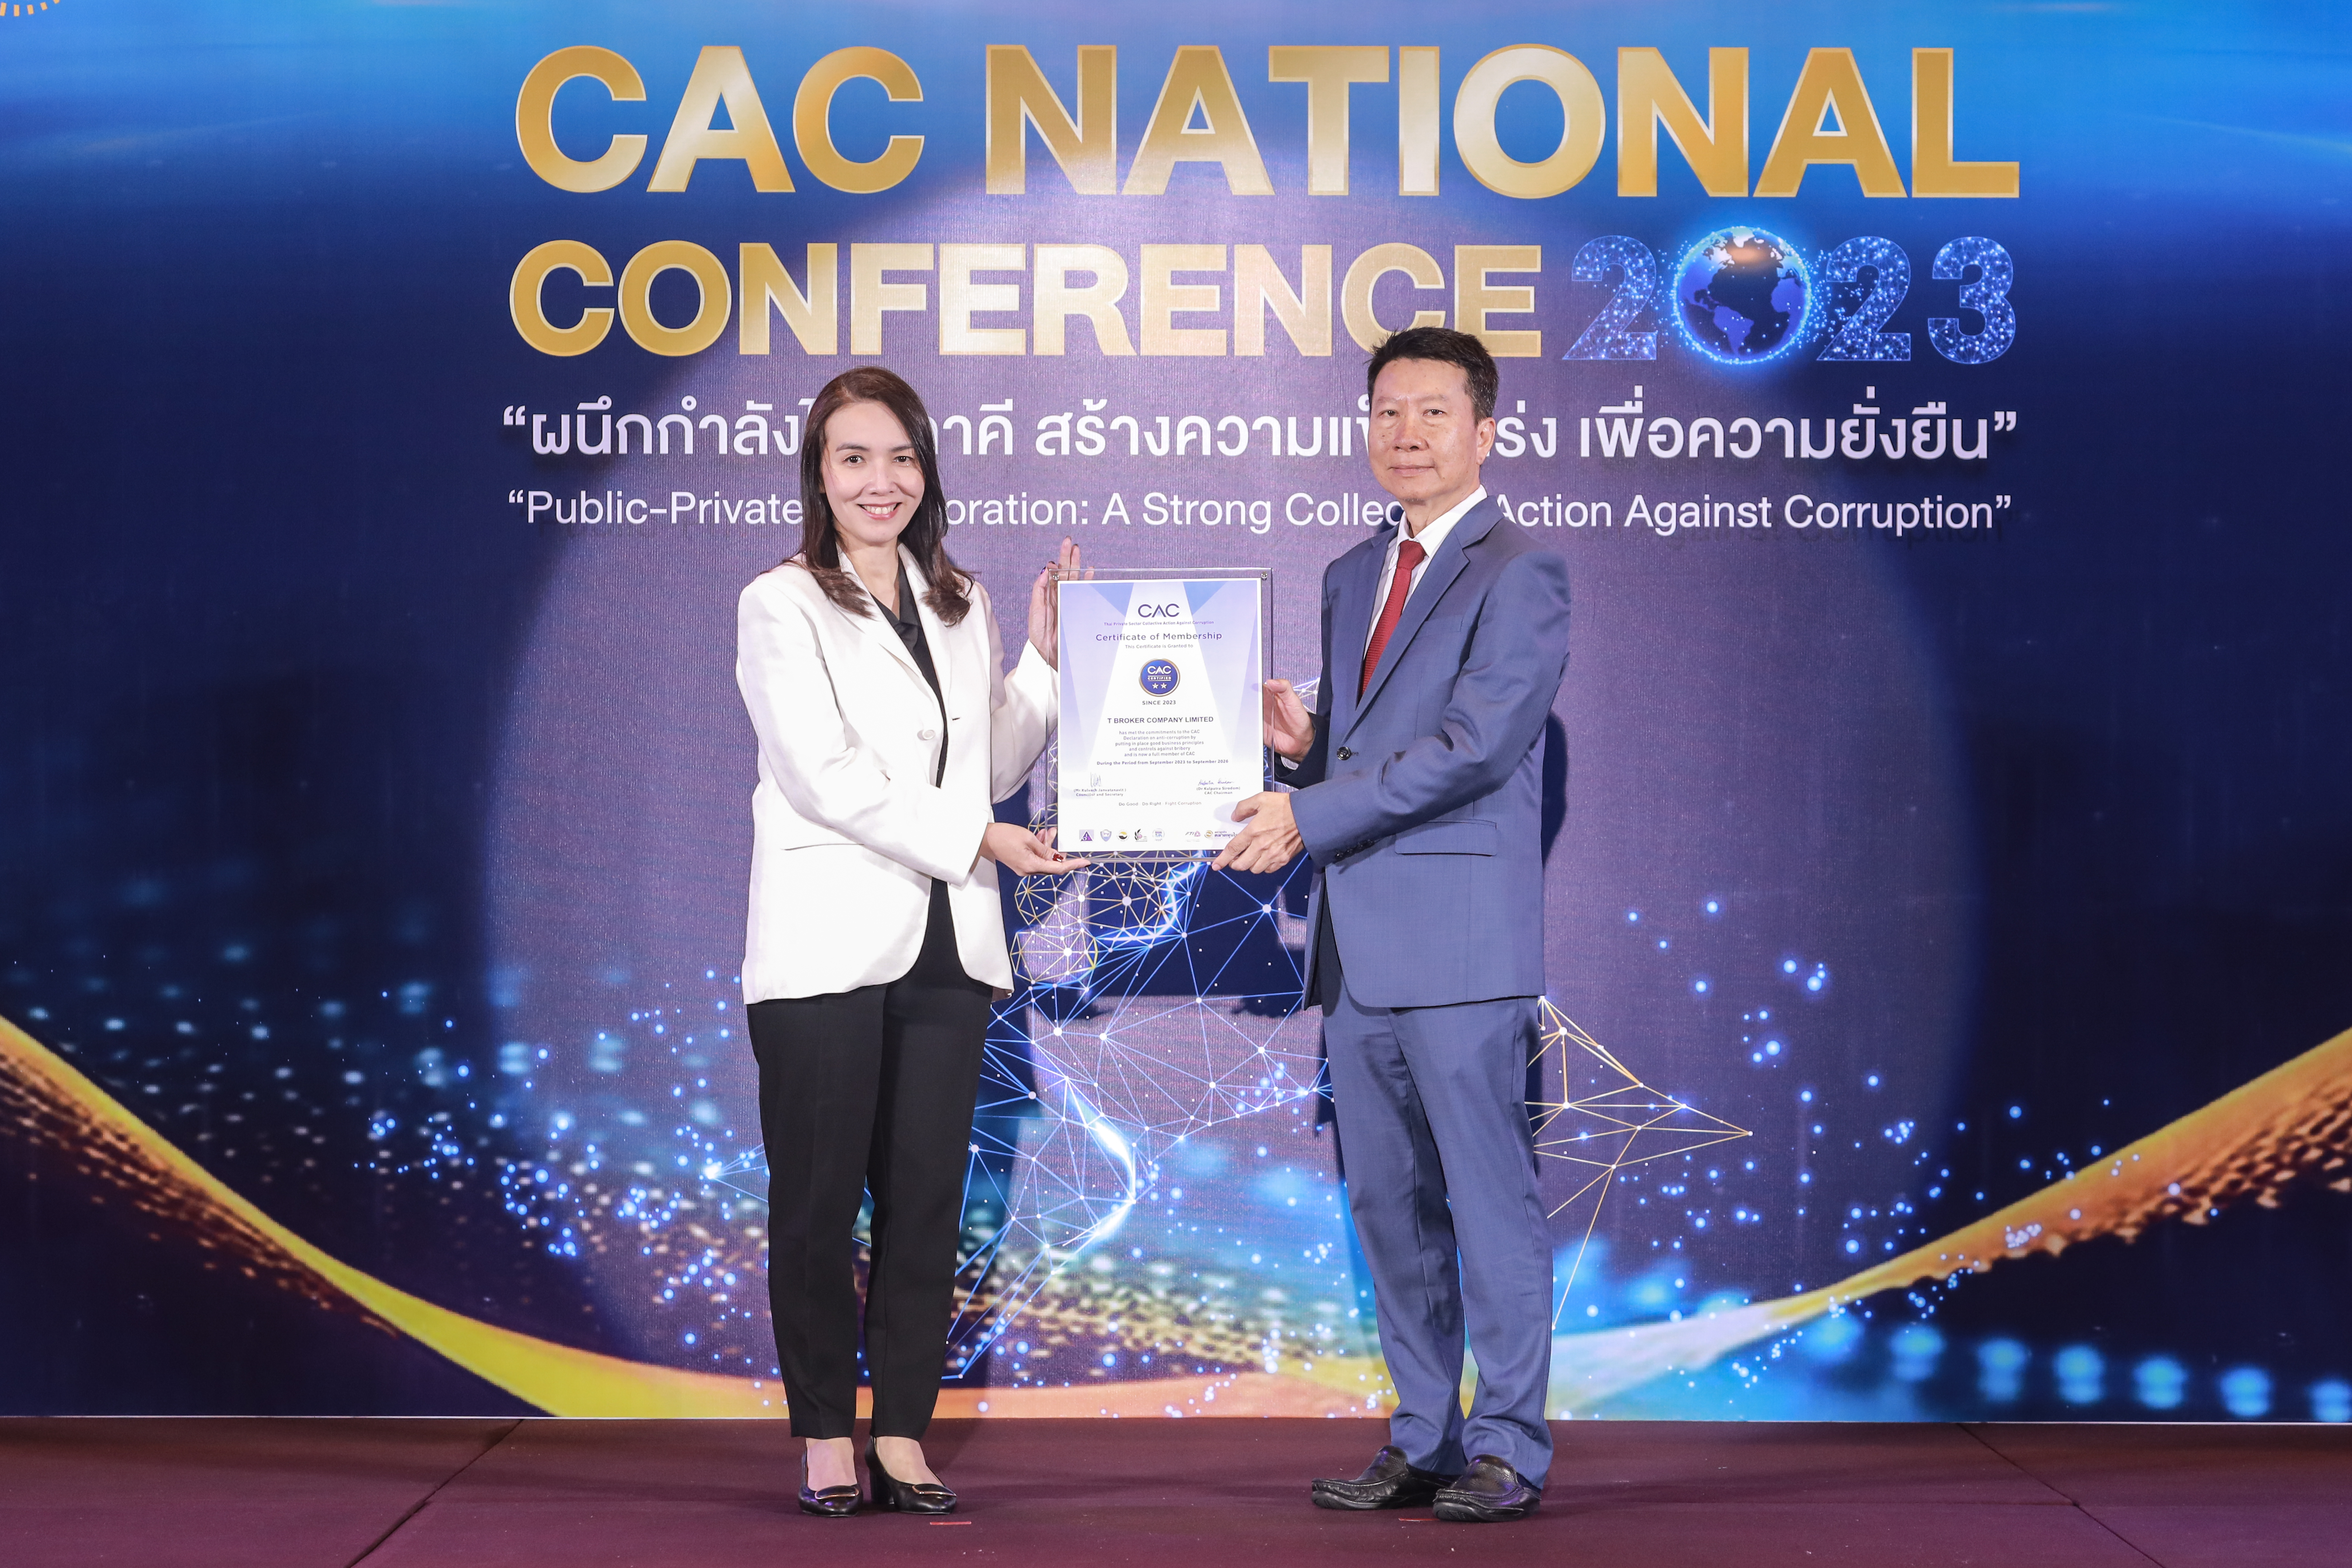 เข้ารับมอบประกาศนียบัตรรับรองการเป็นสมาชิกแนวร่วมต่อต้านการคอร์รัปชันของภาคเอกชนไทย (Thai Private Sector Collective Action Against Corruption (CAC)